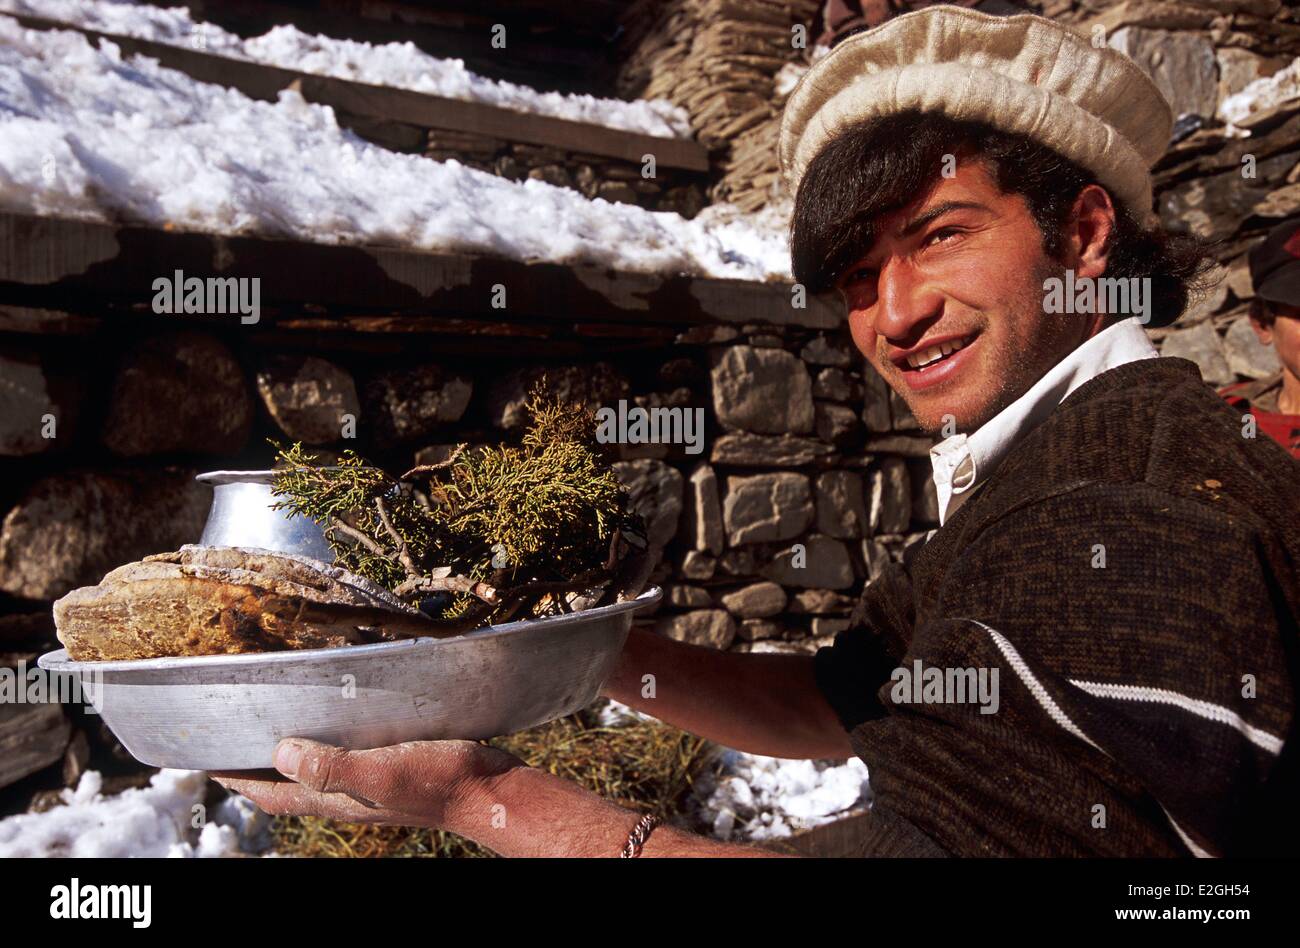 Le Pakistan Khyber Pakhtunkhwa vallées Kalash Kalash valley Bumburet homme tenant dans ses mains le pain et l'eau de genièvre trois éléments sacrés de nombreux rites païens que le rythme des fêtes festival du solstice d'hiver Chaumos Banque D'Images